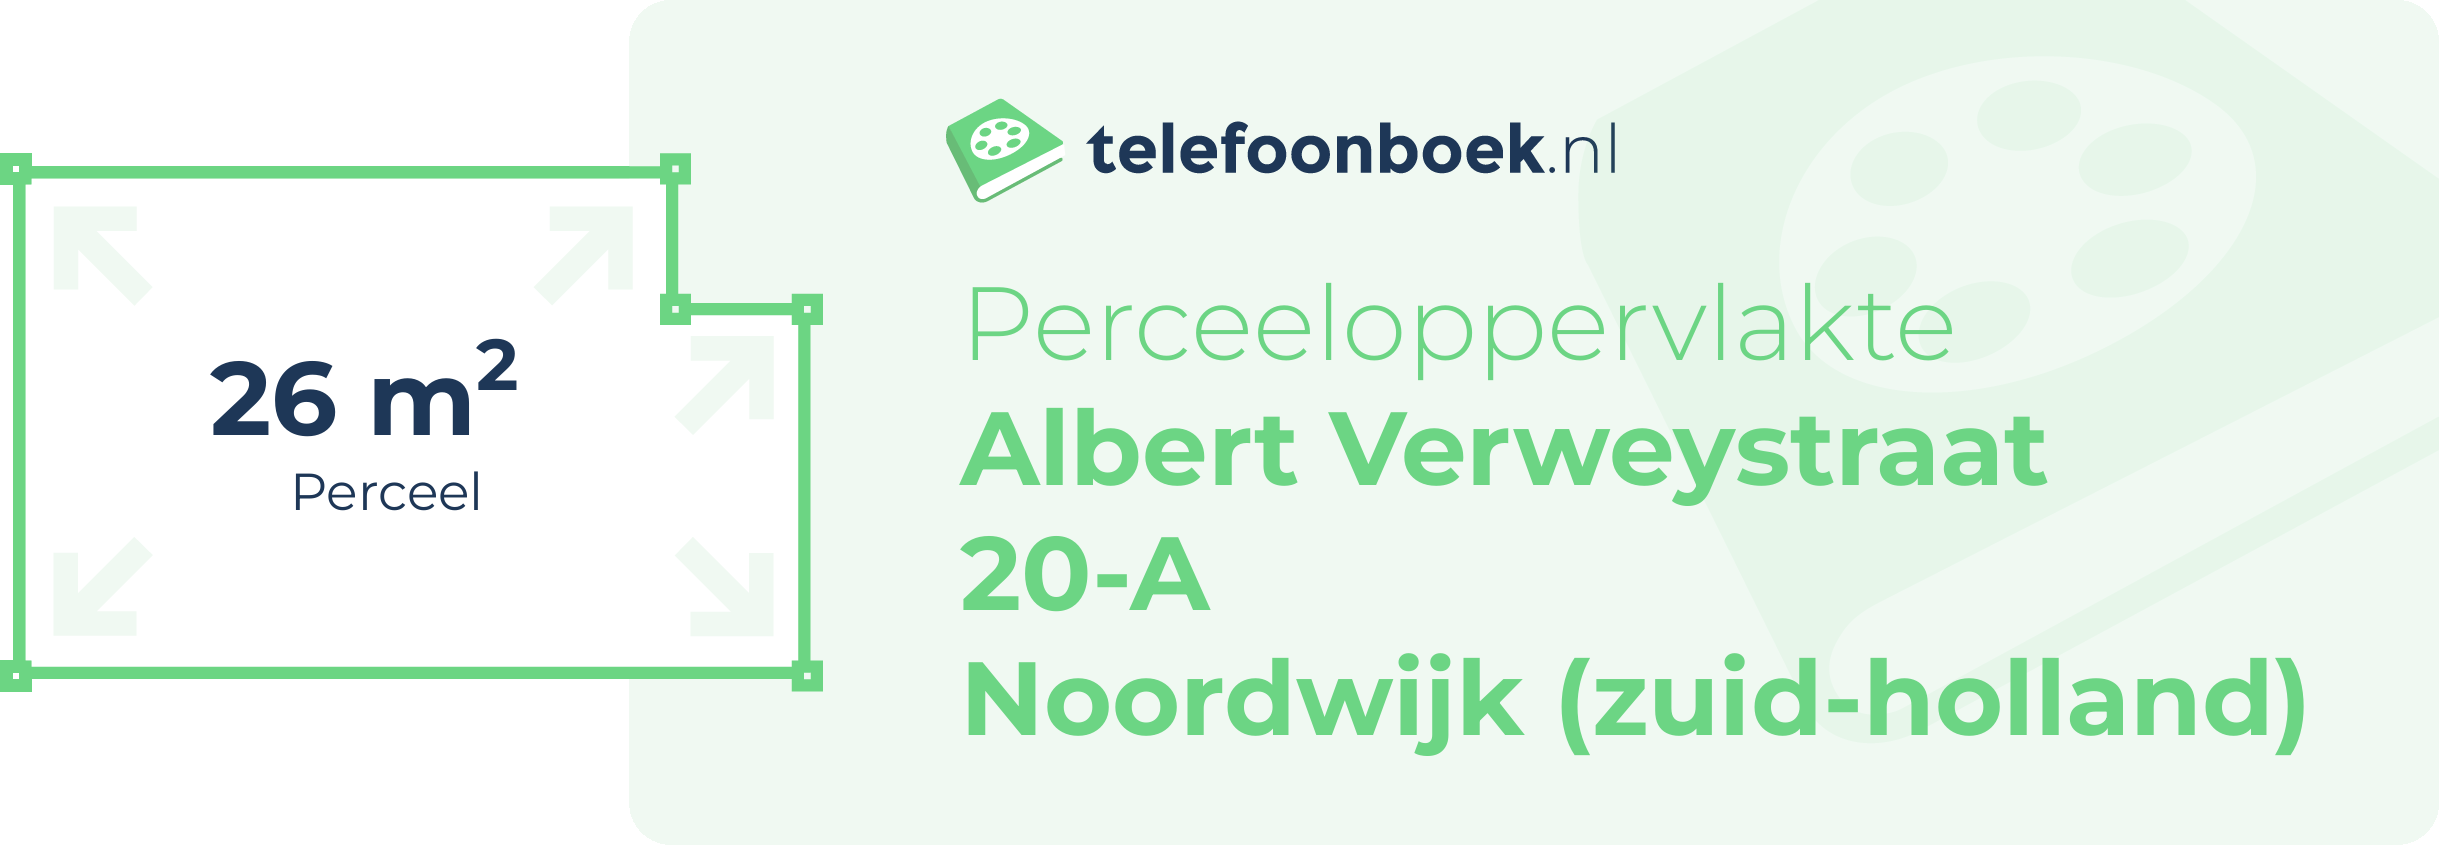 Perceeloppervlakte Albert Verweystraat 20-A Noordwijk (Zuid-Holland)